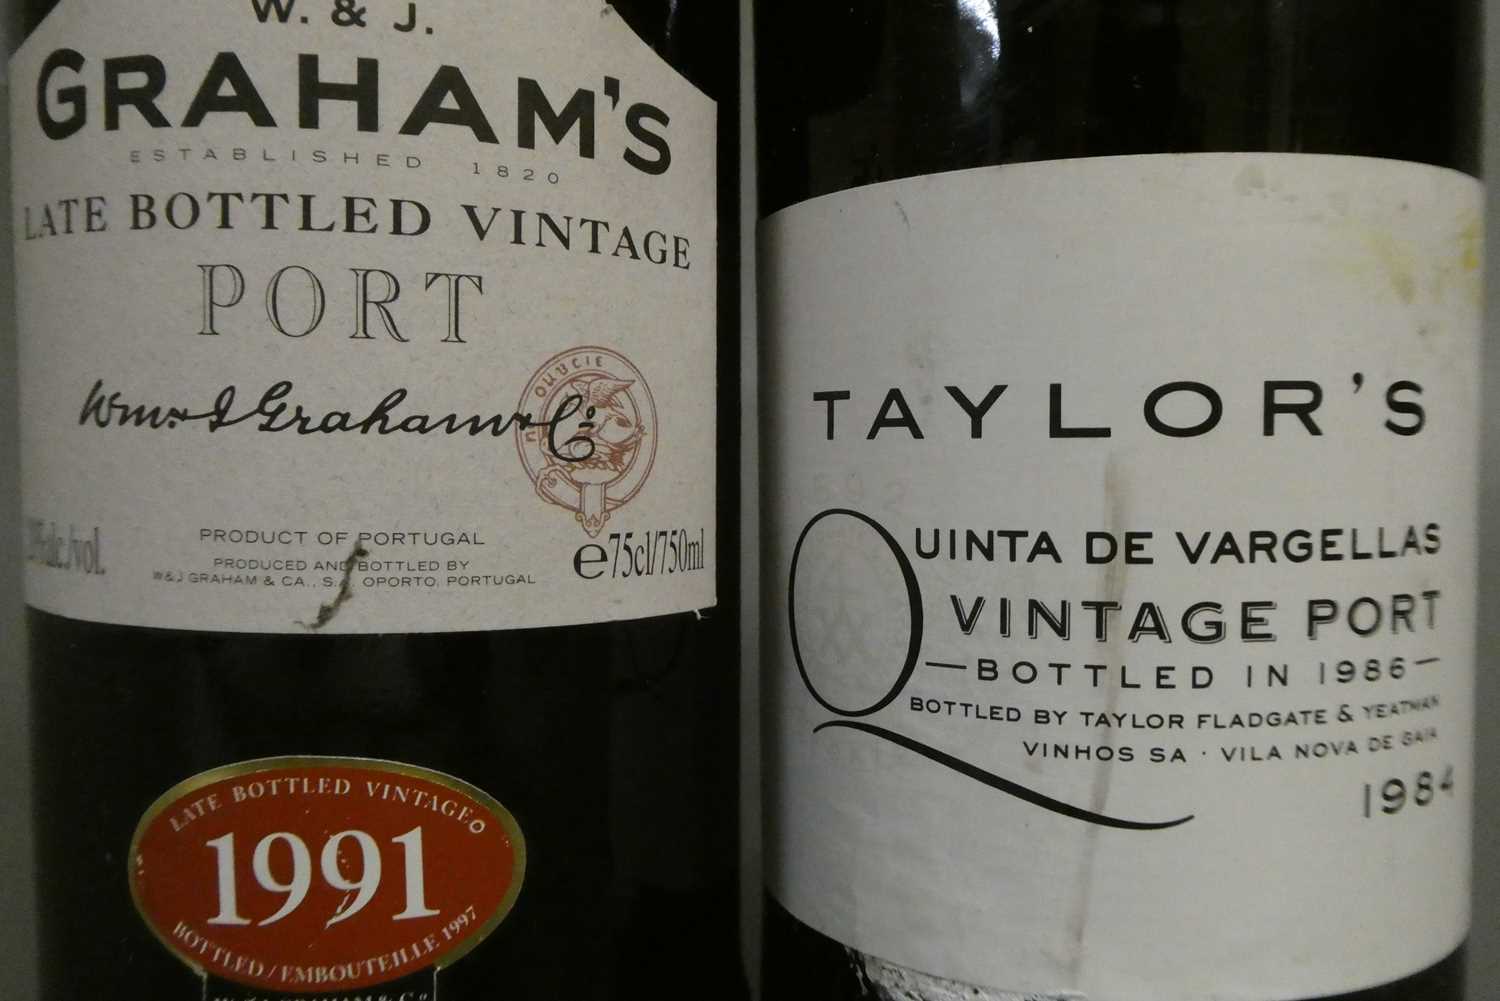 1 bottle Taylor's 1984 vintage port, together with 1 bottle Grahams LBV 1991 port (2) (Est. plus 24% - Image 2 of 2